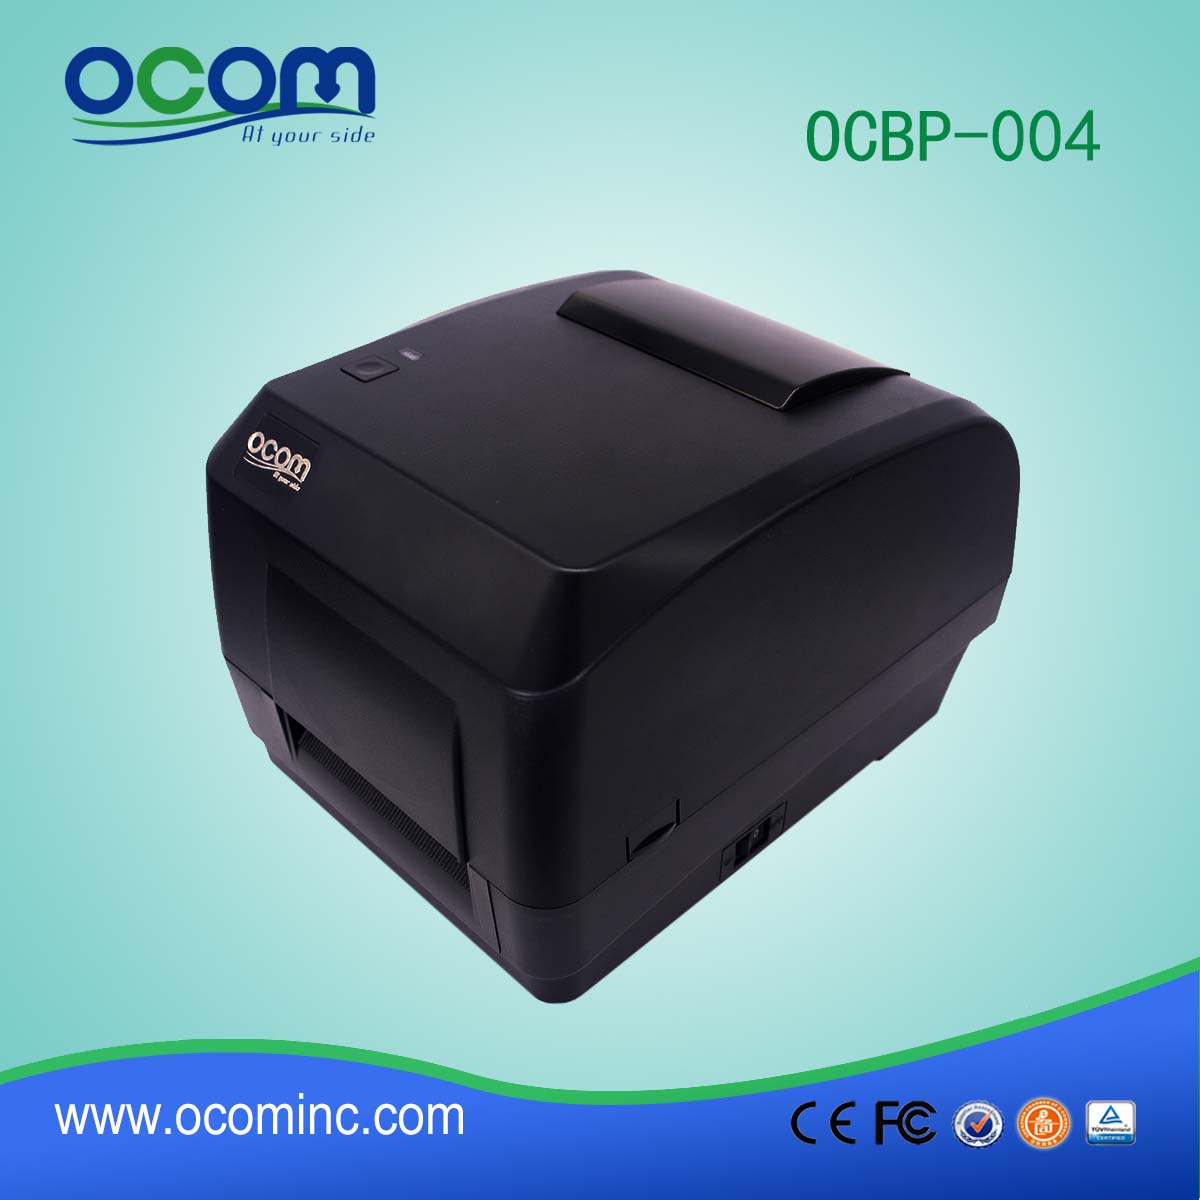 OCBP-004 Thermal Transfer and direct thermal  Bar Code Label Printer